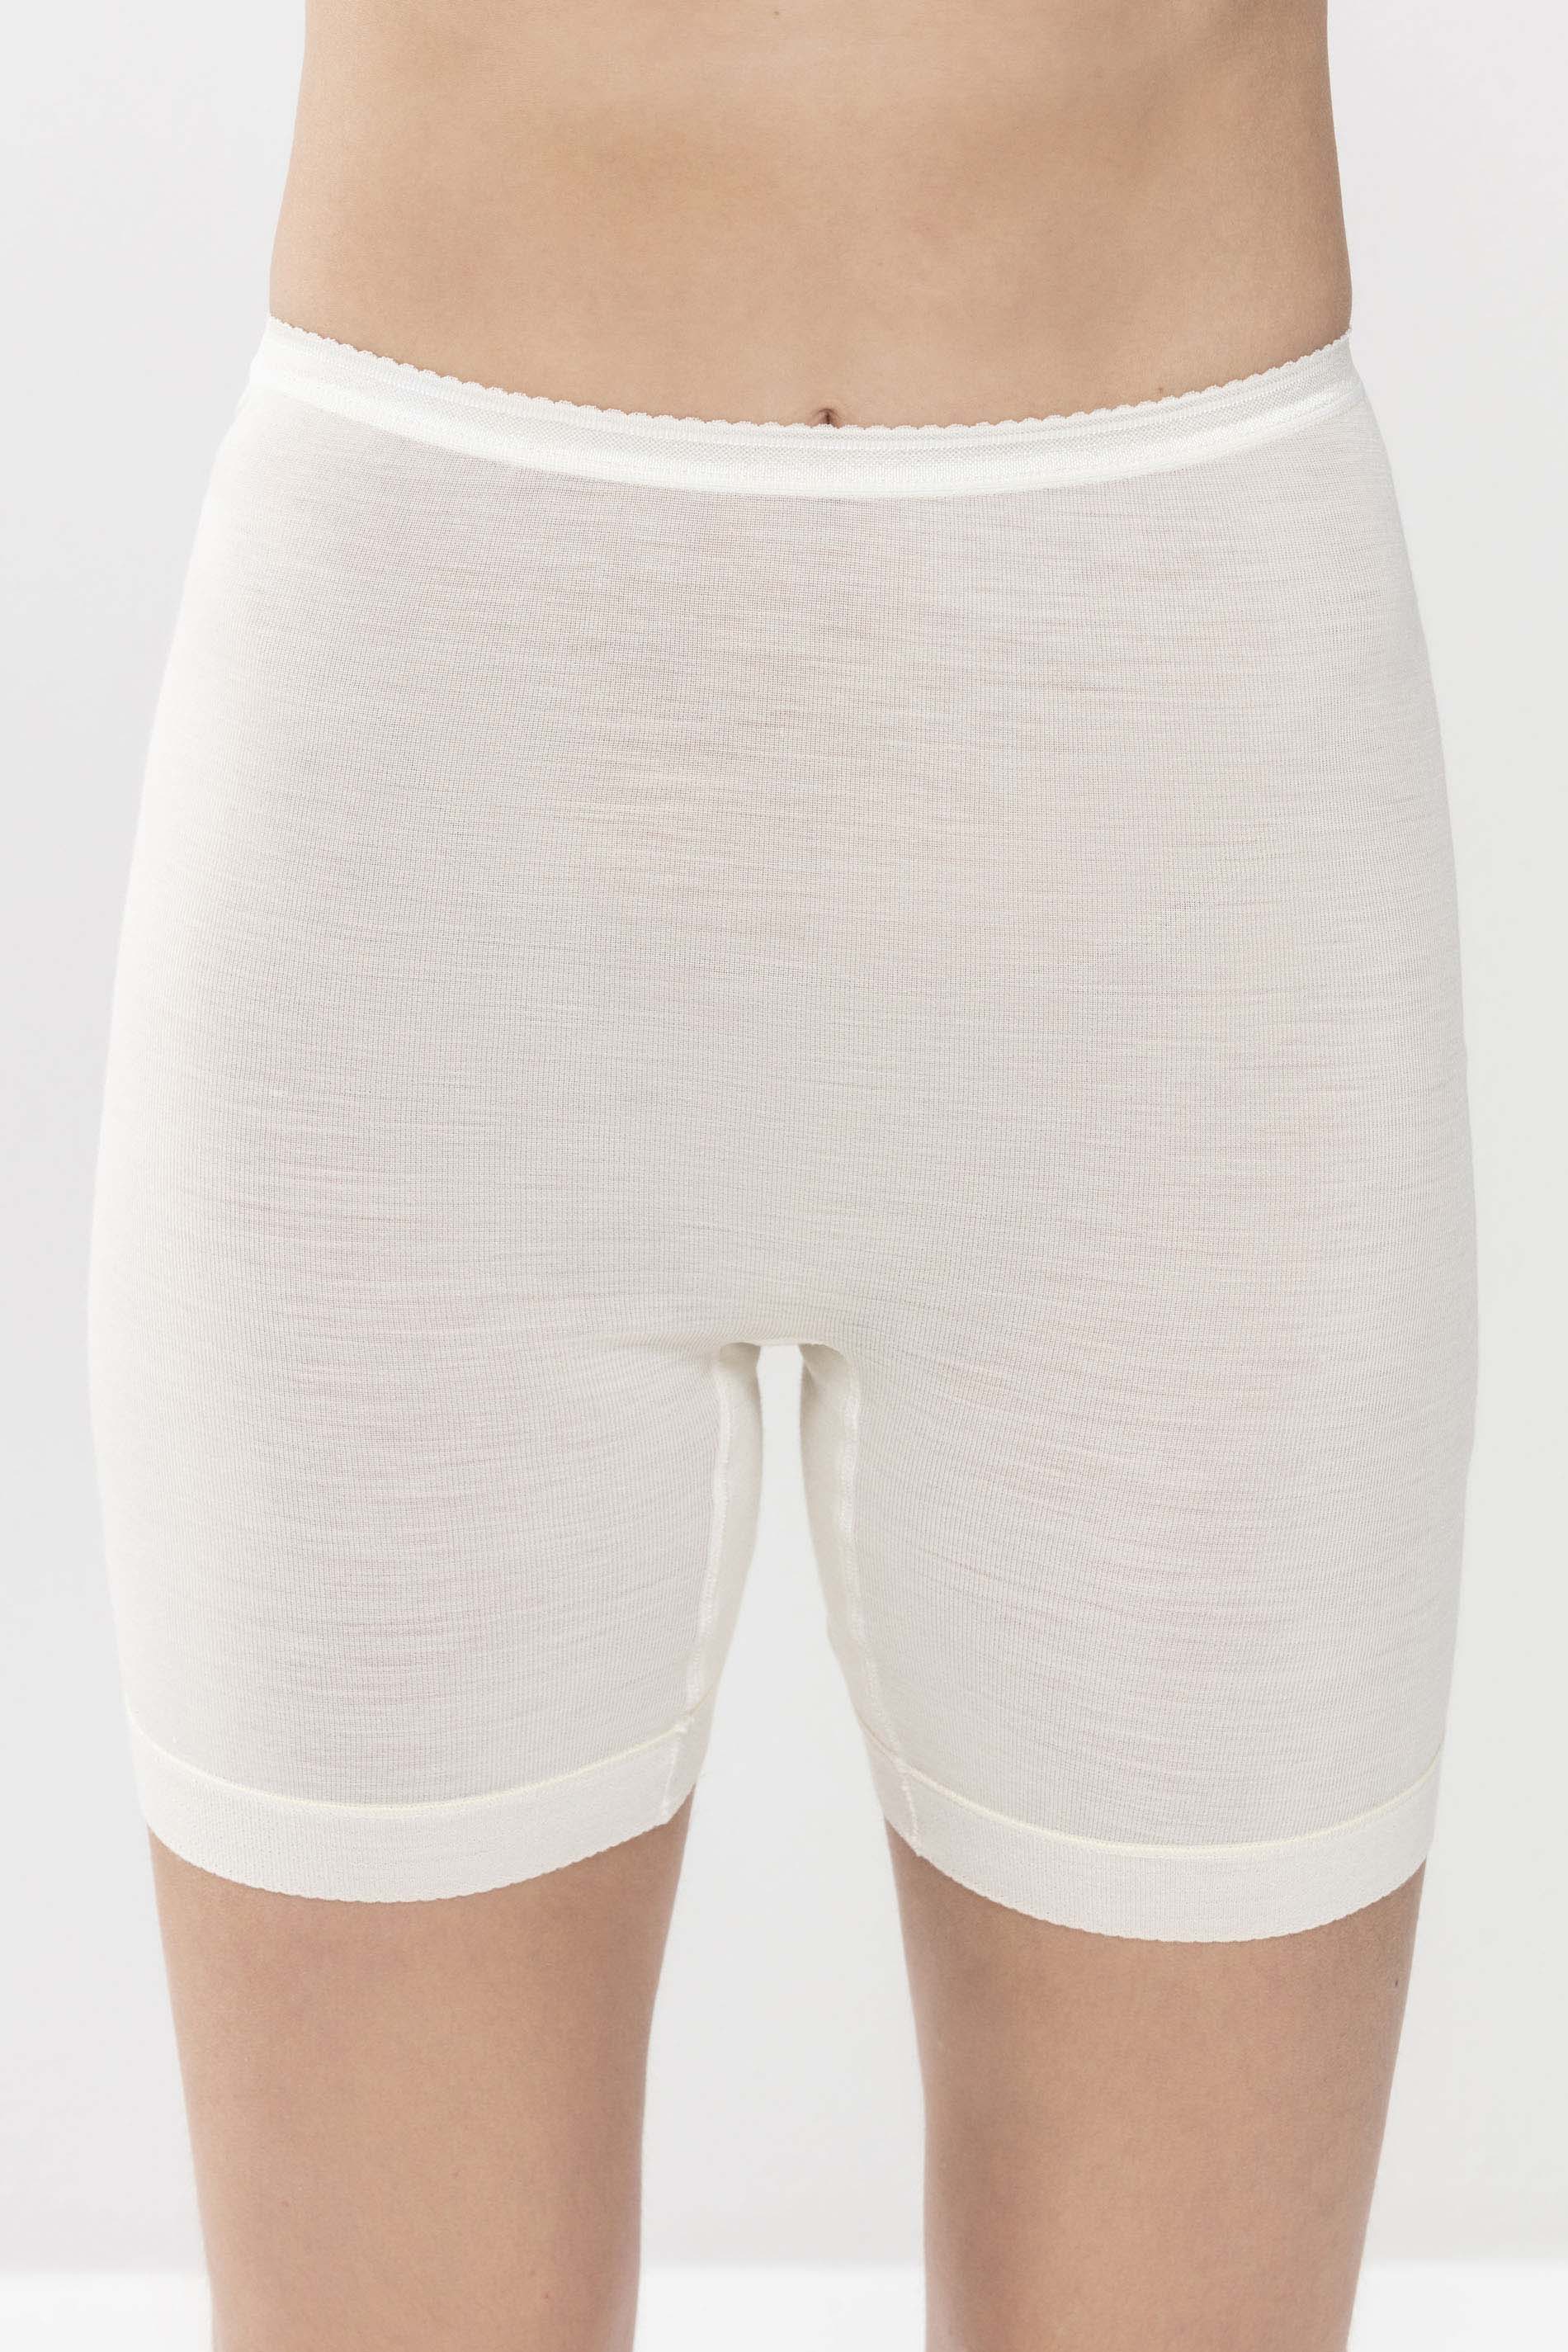 Panty Wit Serie Exquisite Vooraanzicht | mey®